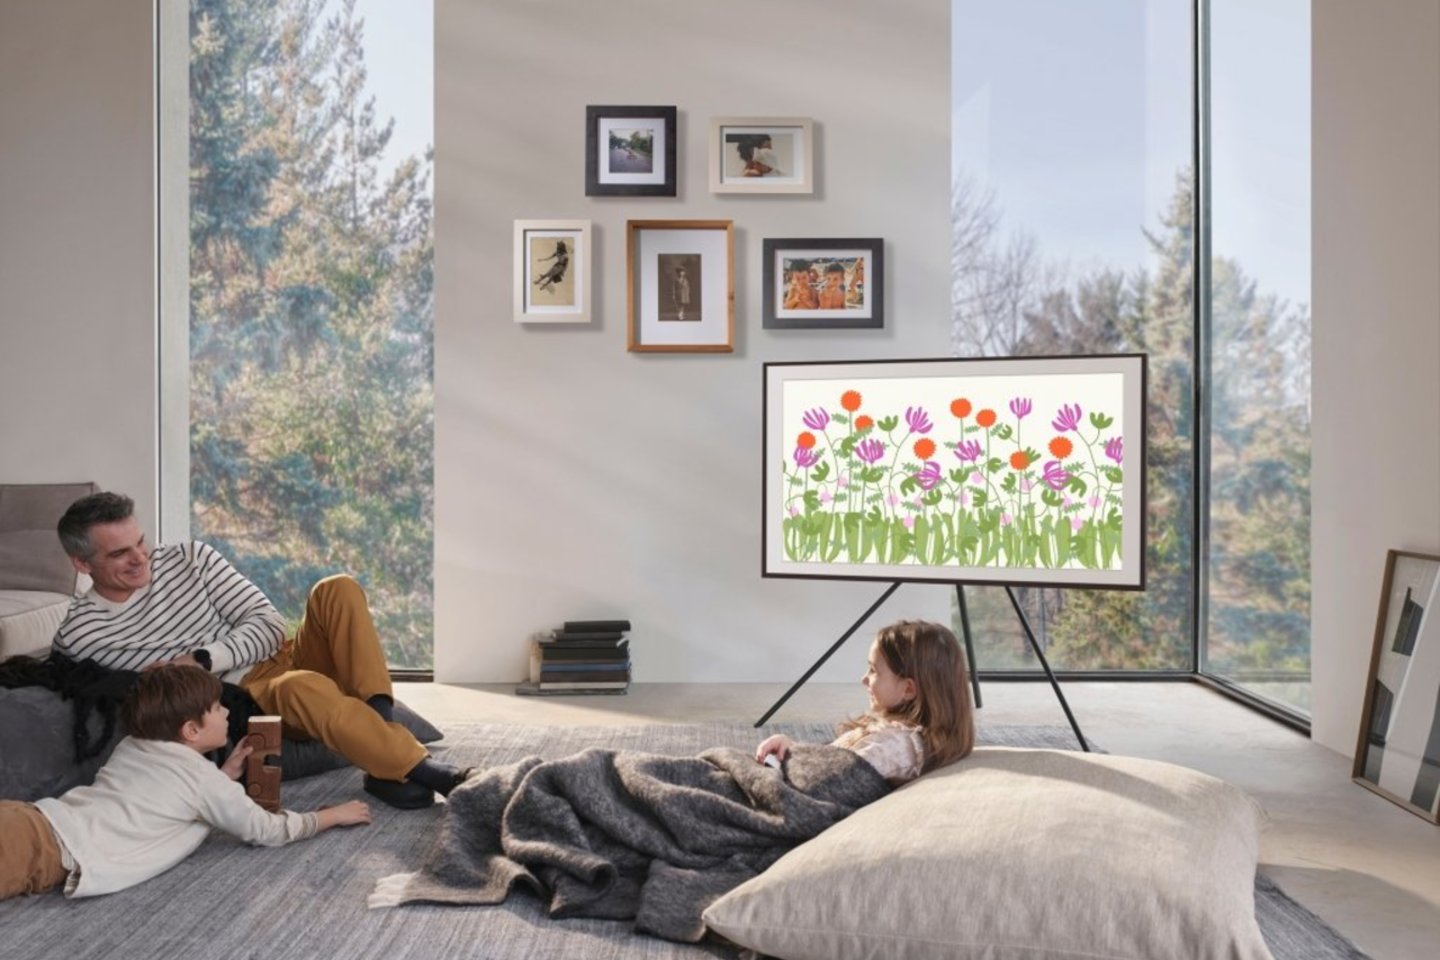  Televizorius gali tapti stilinga interjero detale arba atvirkščiai – sugadinti visą kambario vaizdą.<br>Autorių nuotr.